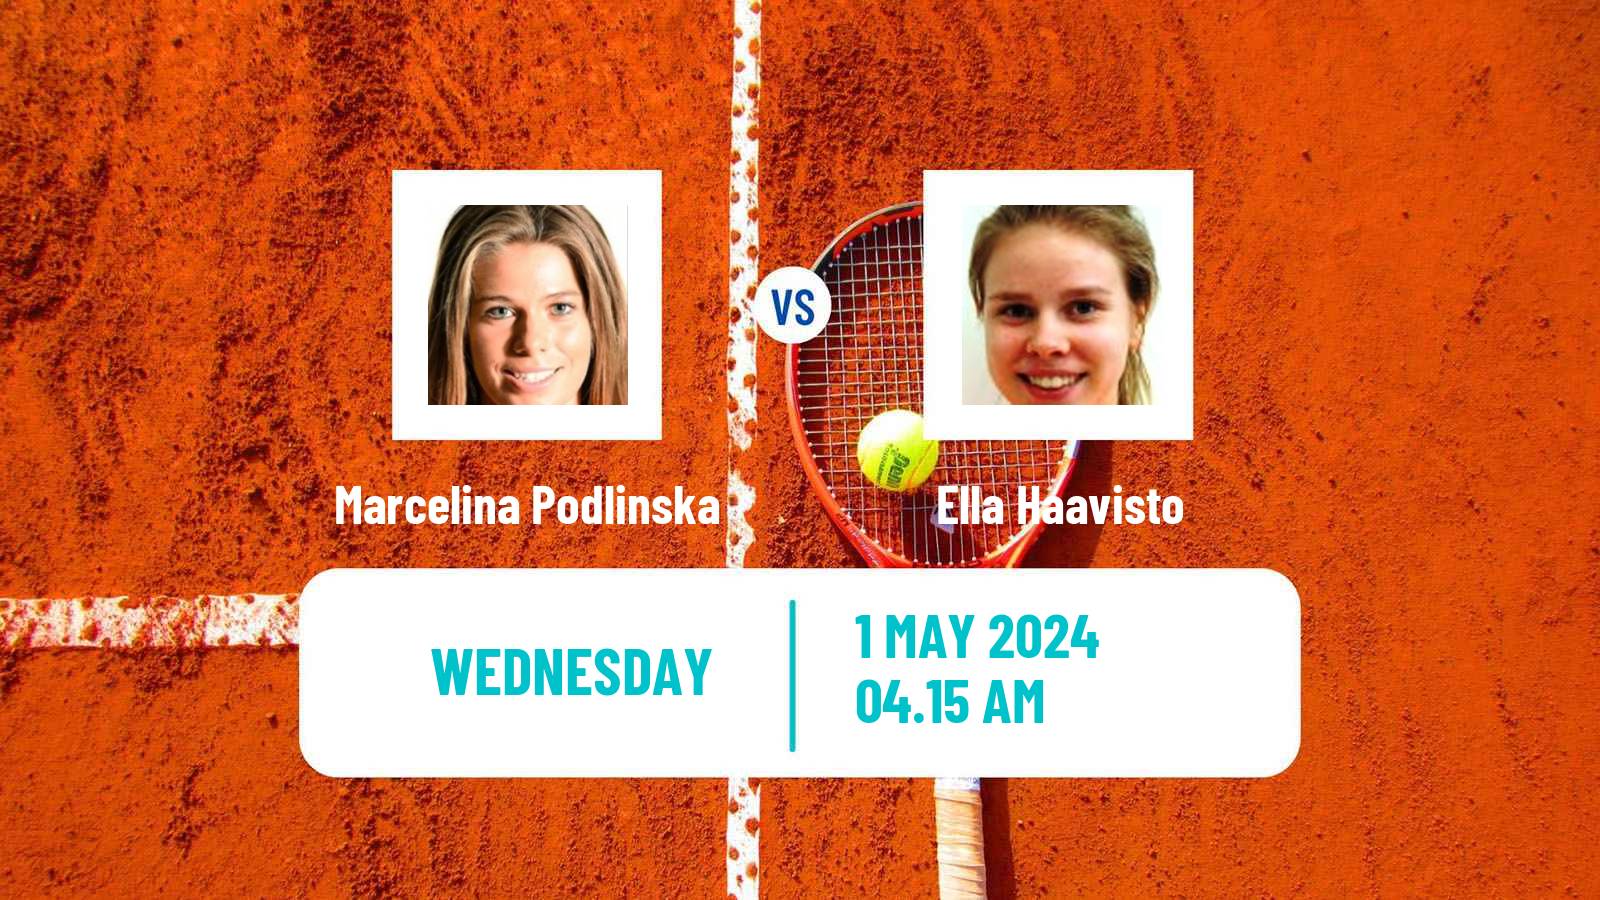 Tennis ITF W15 Varberg Women Marcelina Podlinska - Ella Haavisto